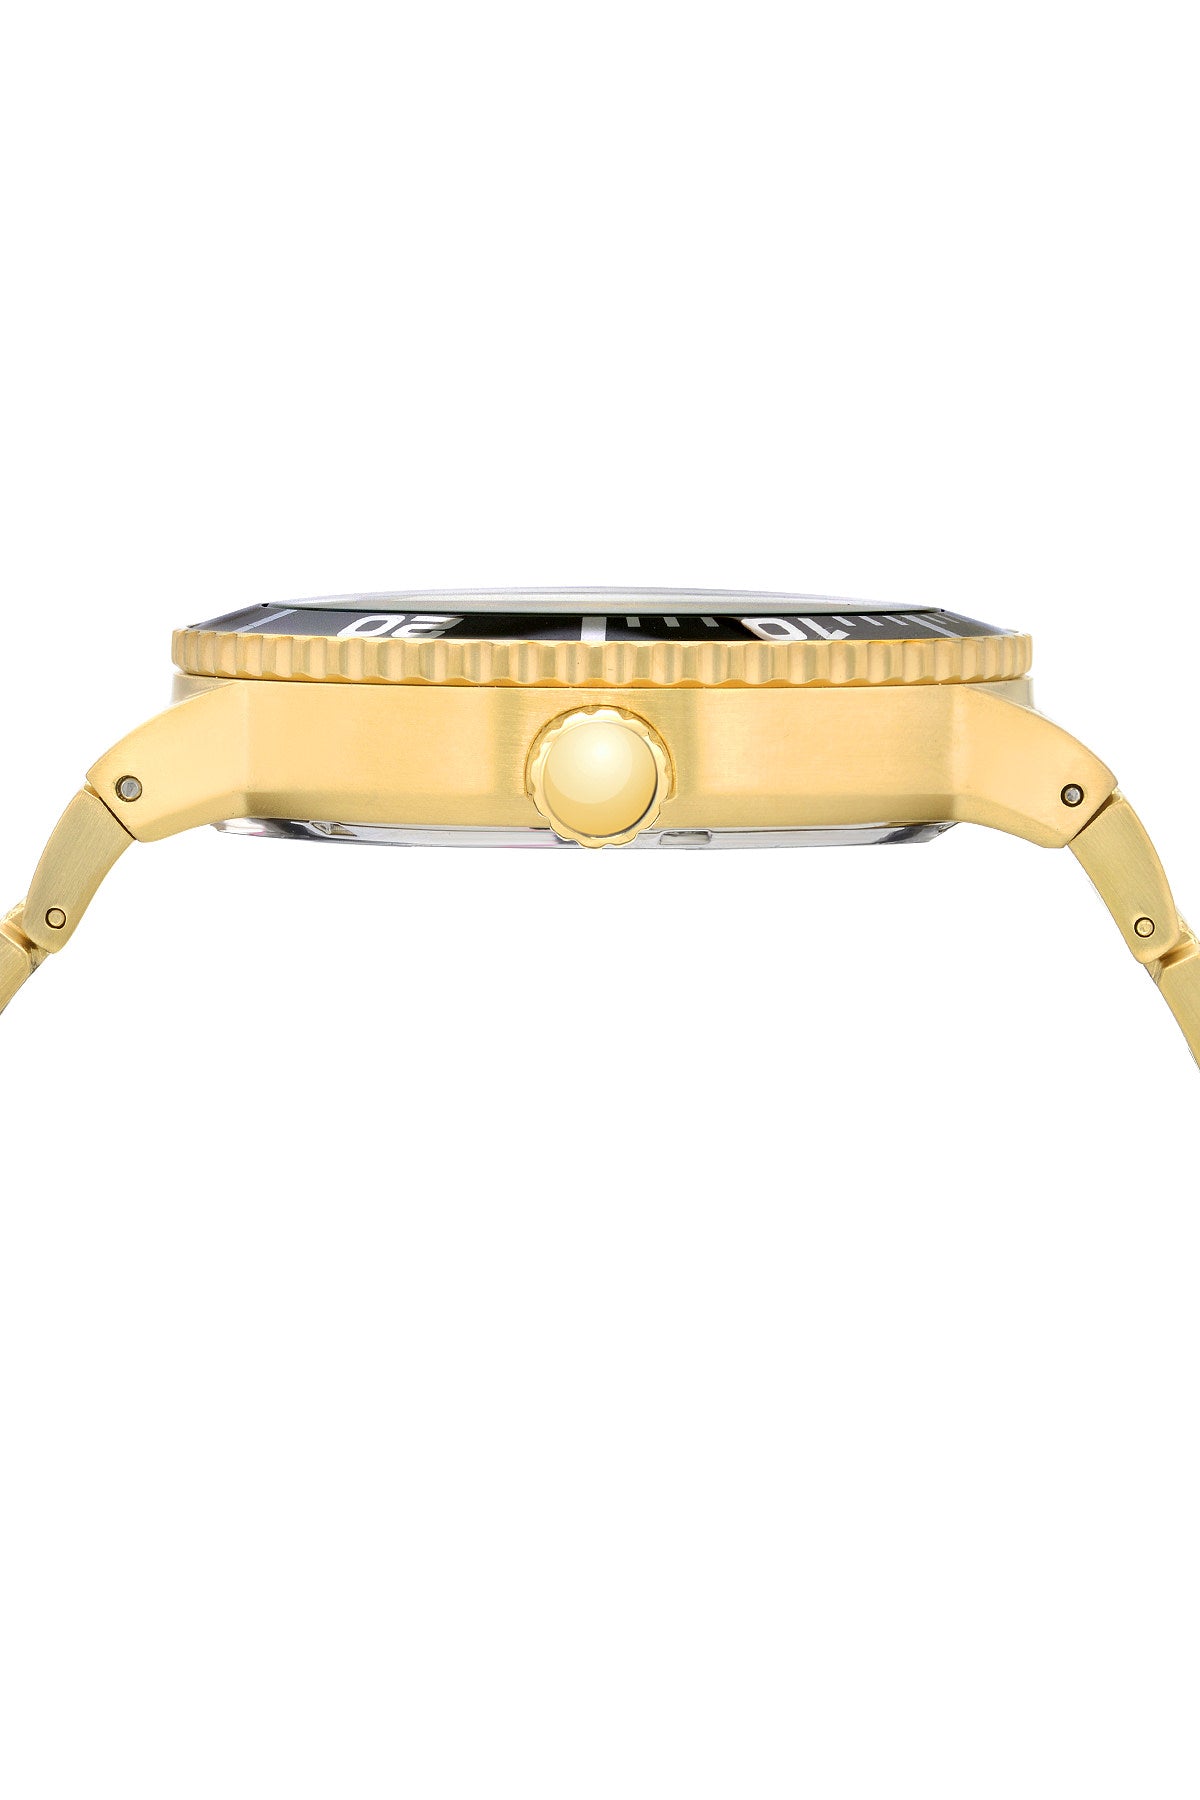 Porsamo Bleu Sebastian luxury men's stainless steel watch, gold, black, blue 462BSES